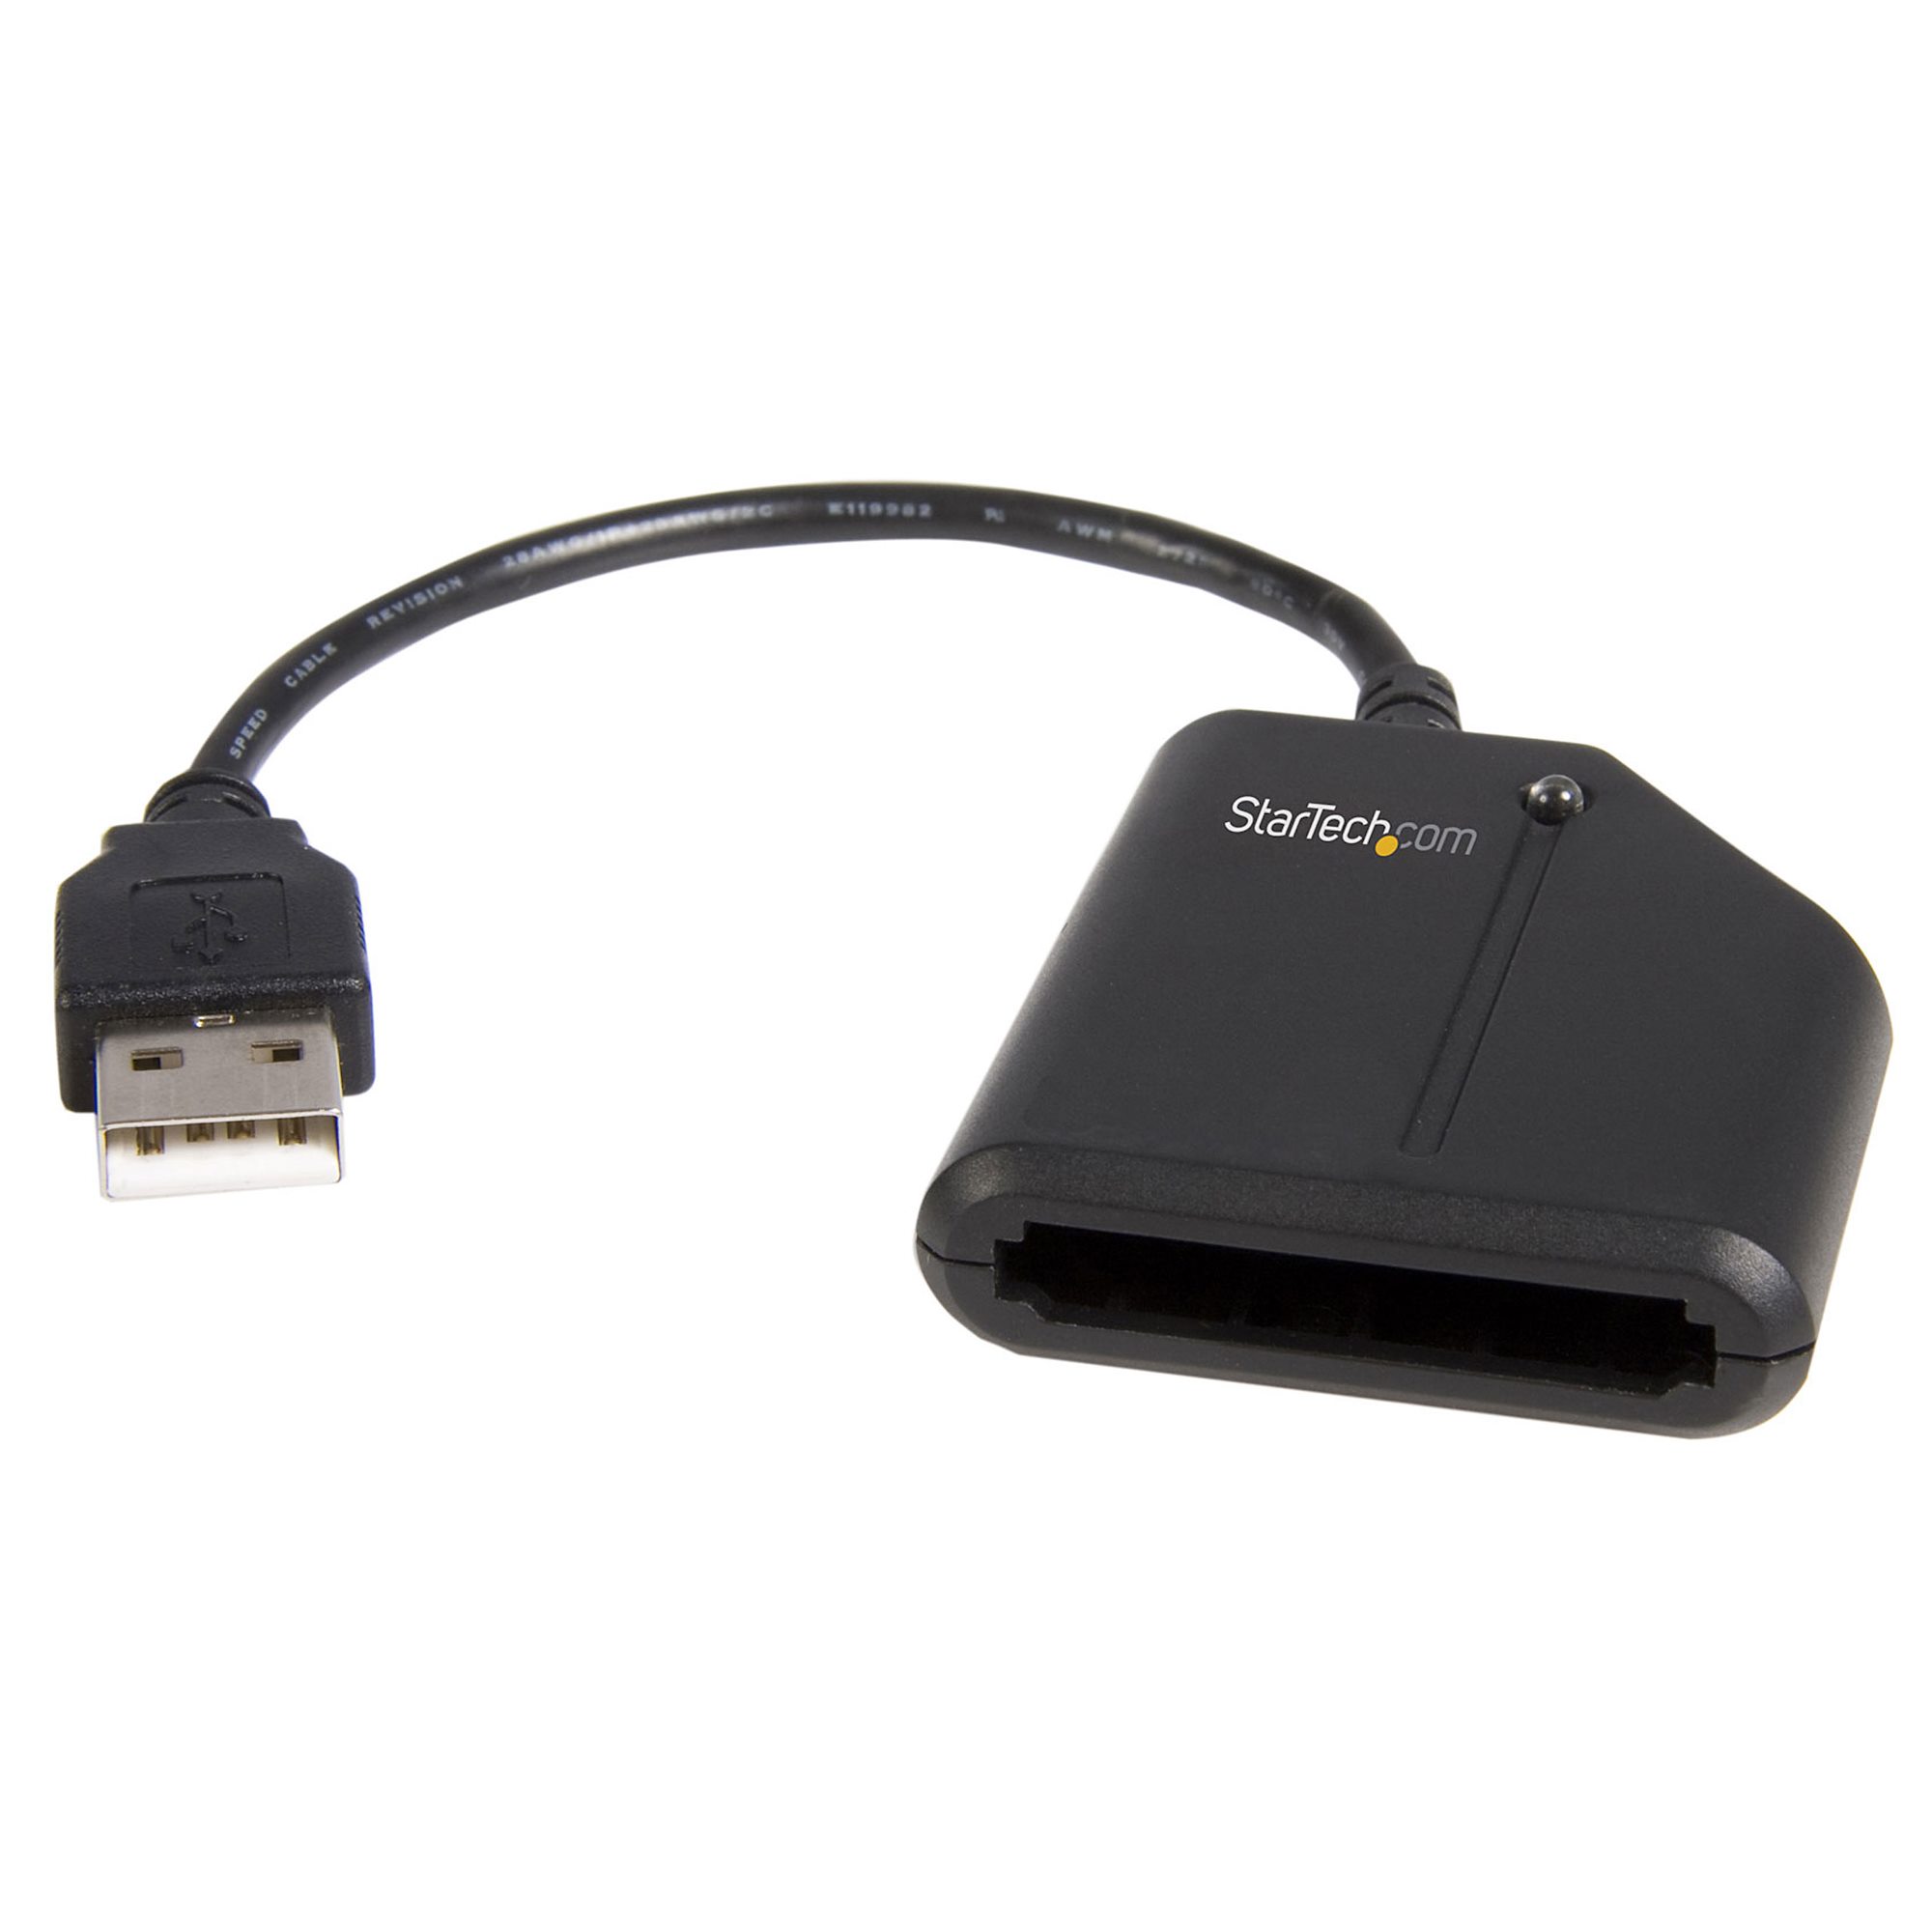 Adaptateur USB vers ExpressCard idéal pour les cartes à haut débit sans fil